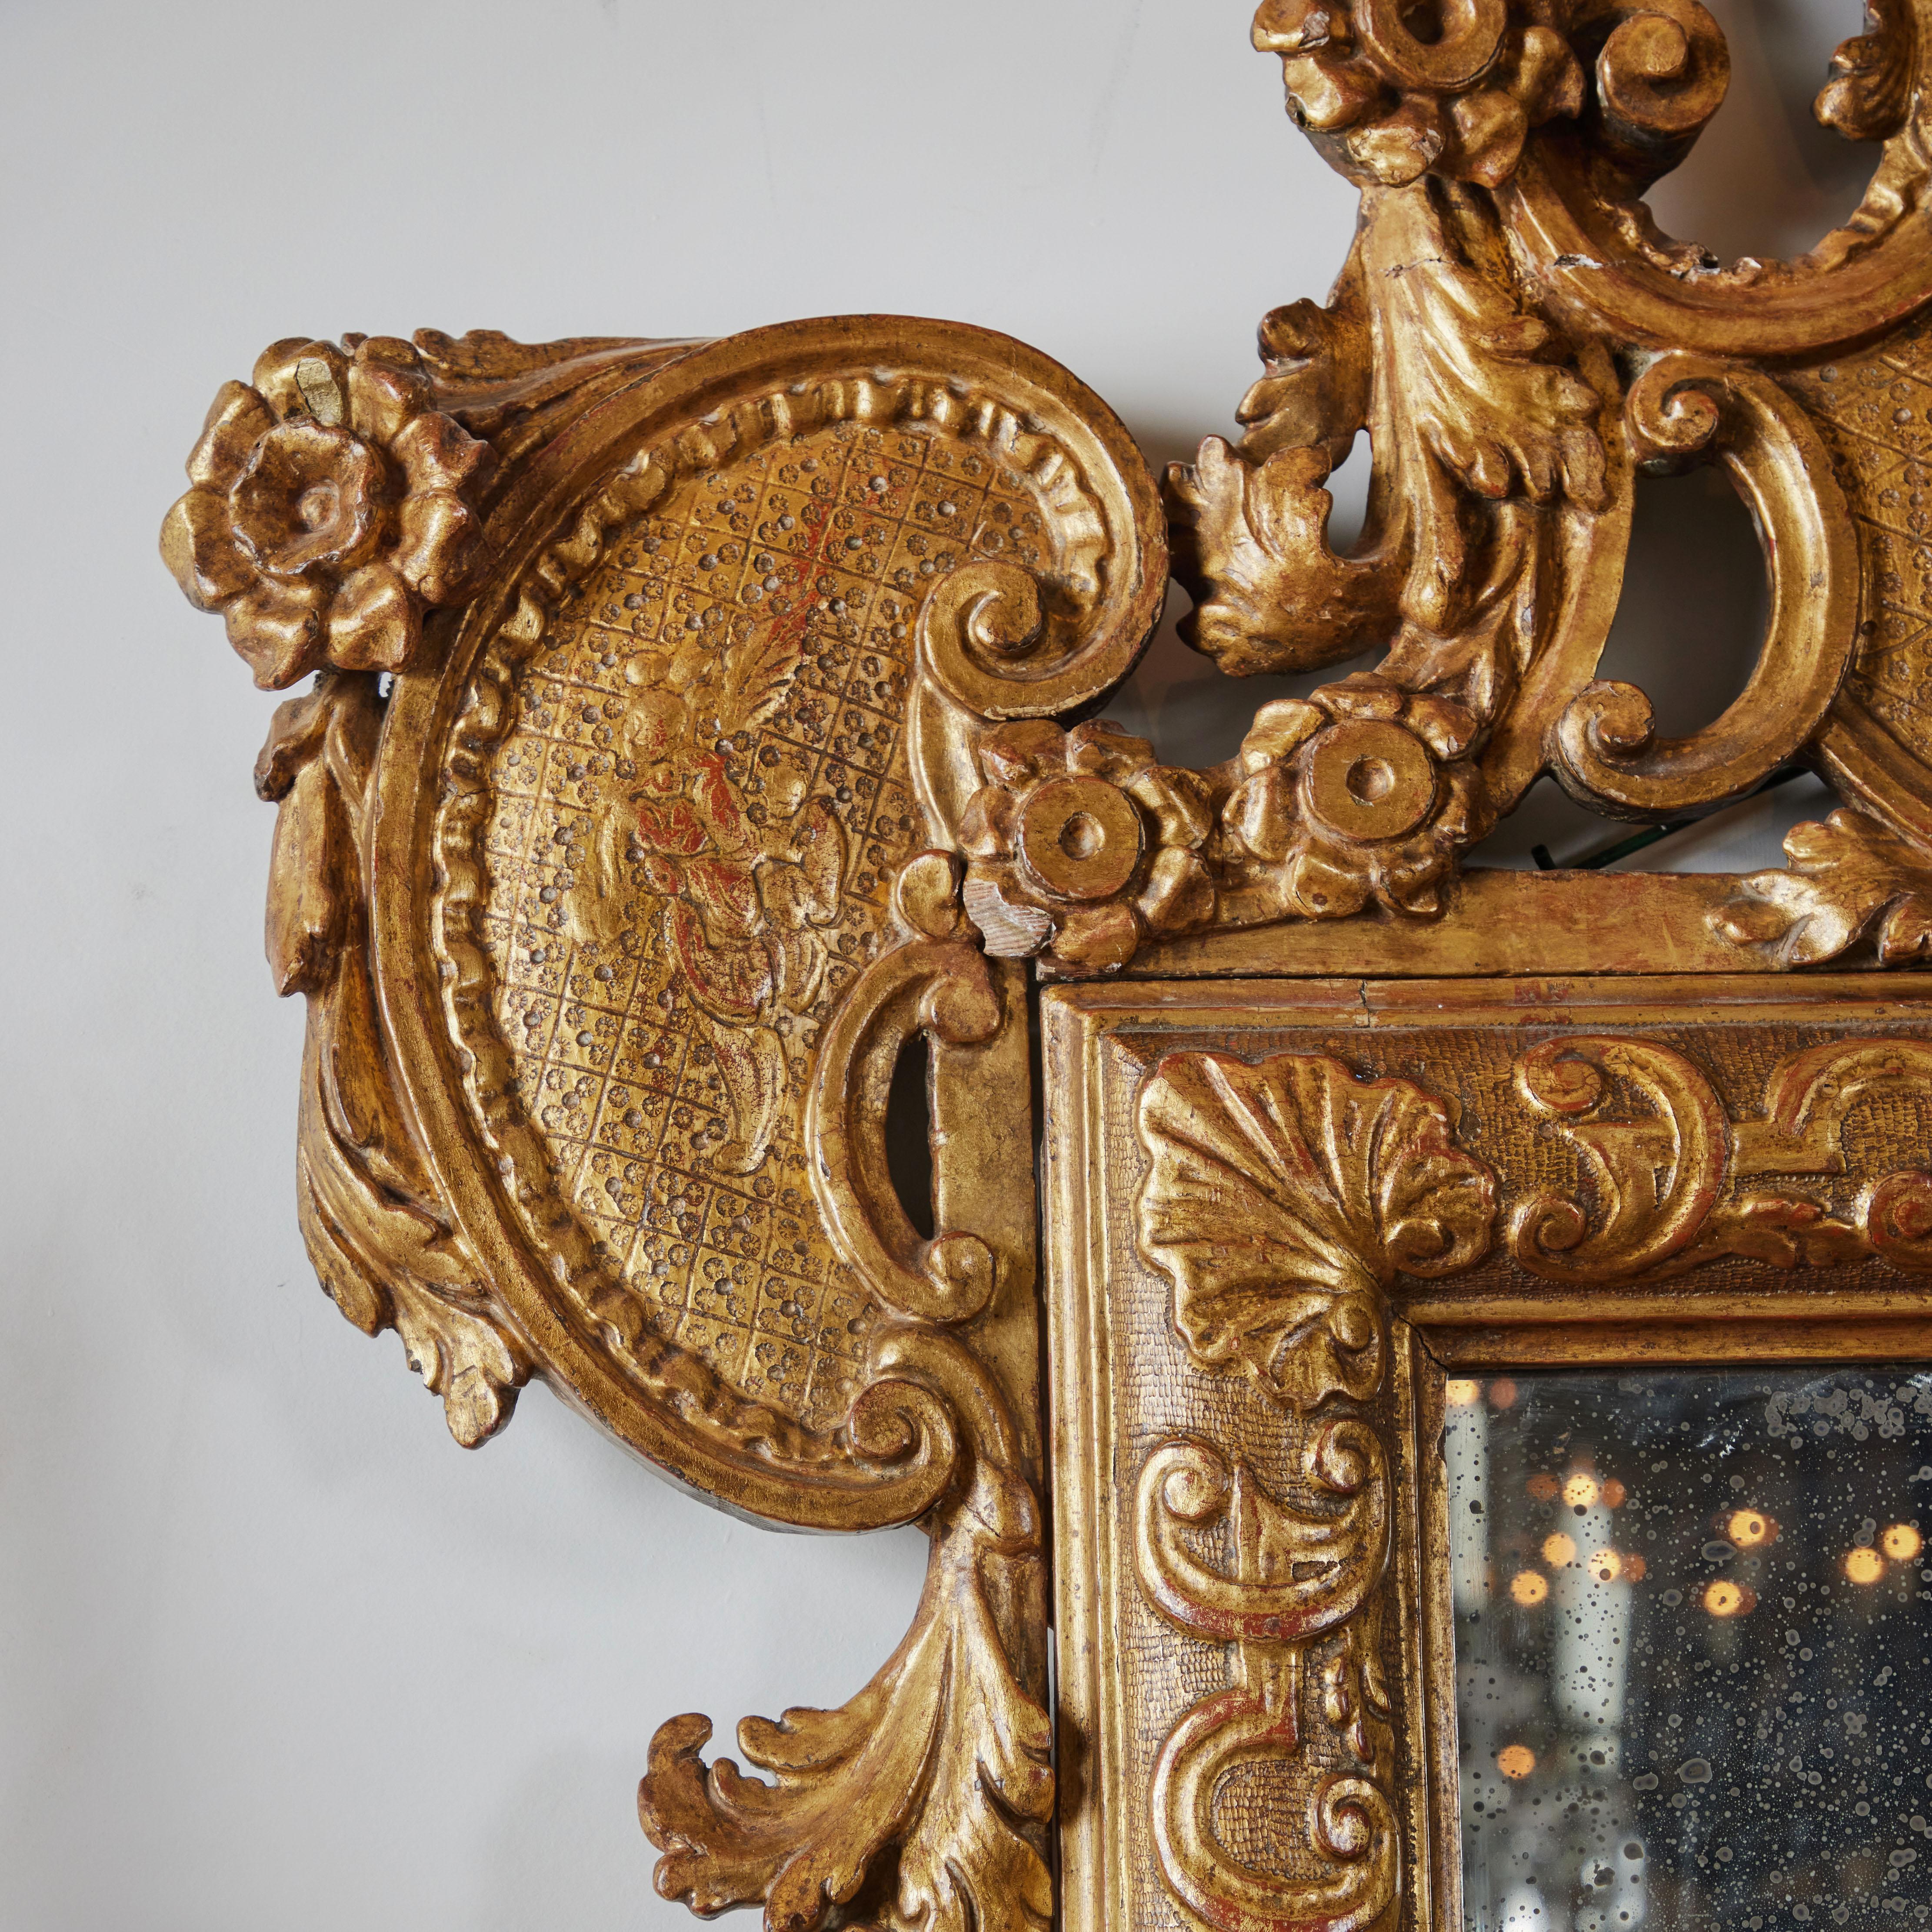 Une élégante paire de miroirs vénitiens sculptés et dorés à la main avec des Chinoiseries et des motifs floraux. Verre d'origine avec des marbrures adaptées à l'âge.  